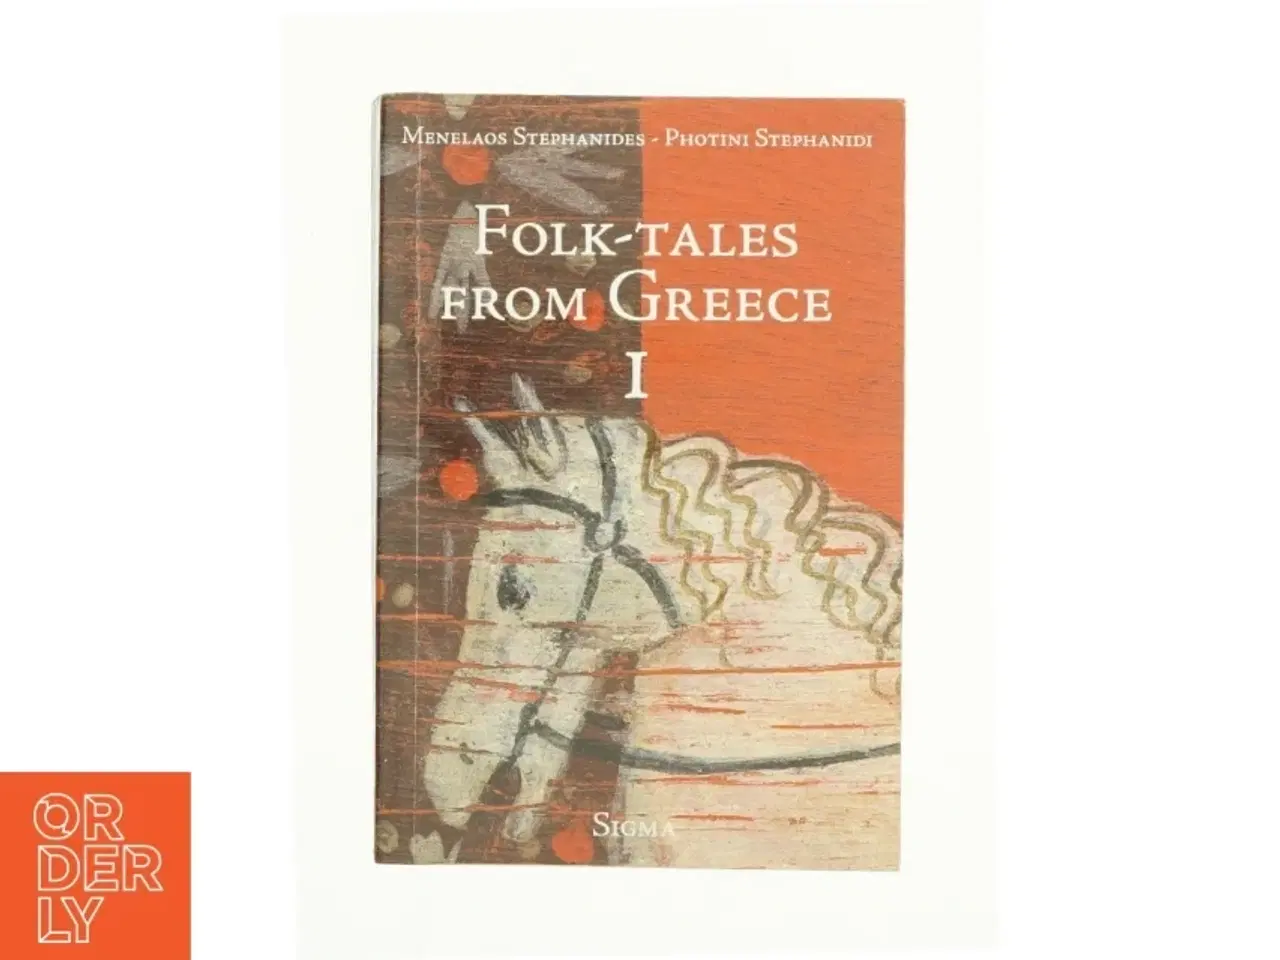 Billede 1 - Folk Tales from Greece (Bk. 1) af Menelaos Stephanides (Bog)